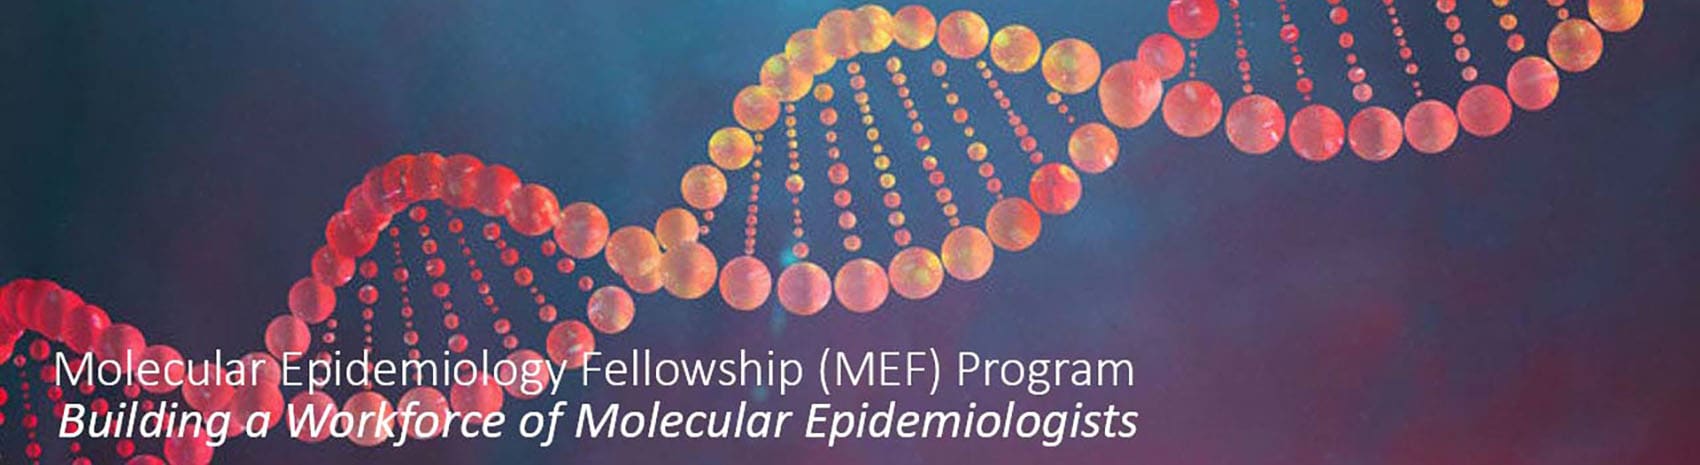 Molecular Epidemiology Fellowship